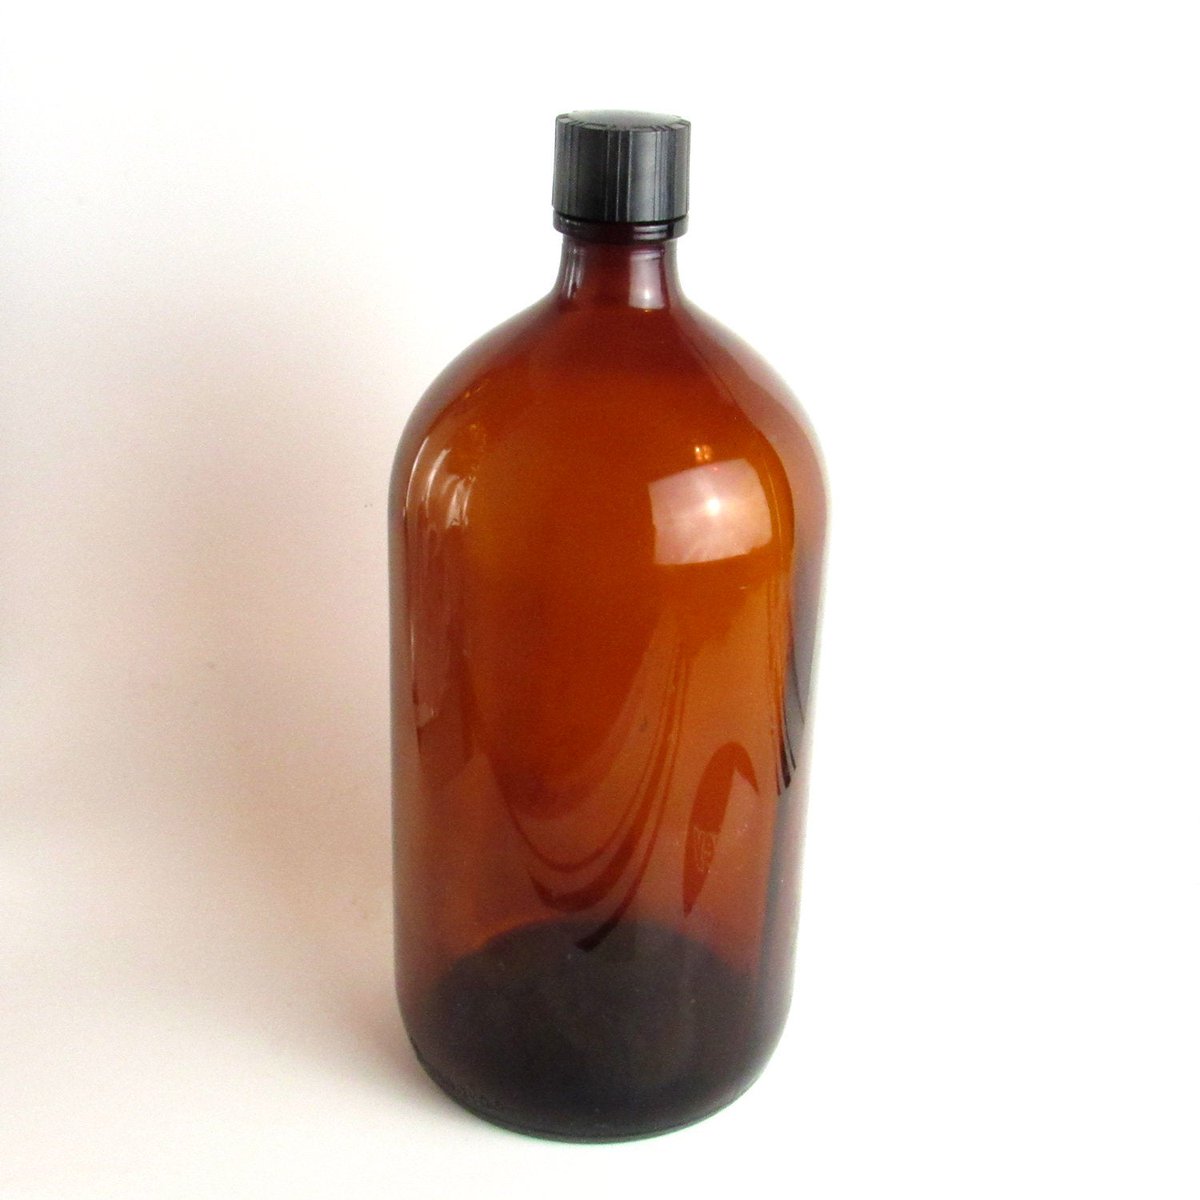 1945 Duraglas Large Amber Apothecary Bottle, Owens-Illinois Glass Company etsy.me/2IyXMEg #vintage #collectibles #amberglass #owensillinois #duraglass #duraglasbottle #amberbottle #largeamberbottle #pharmacybottle